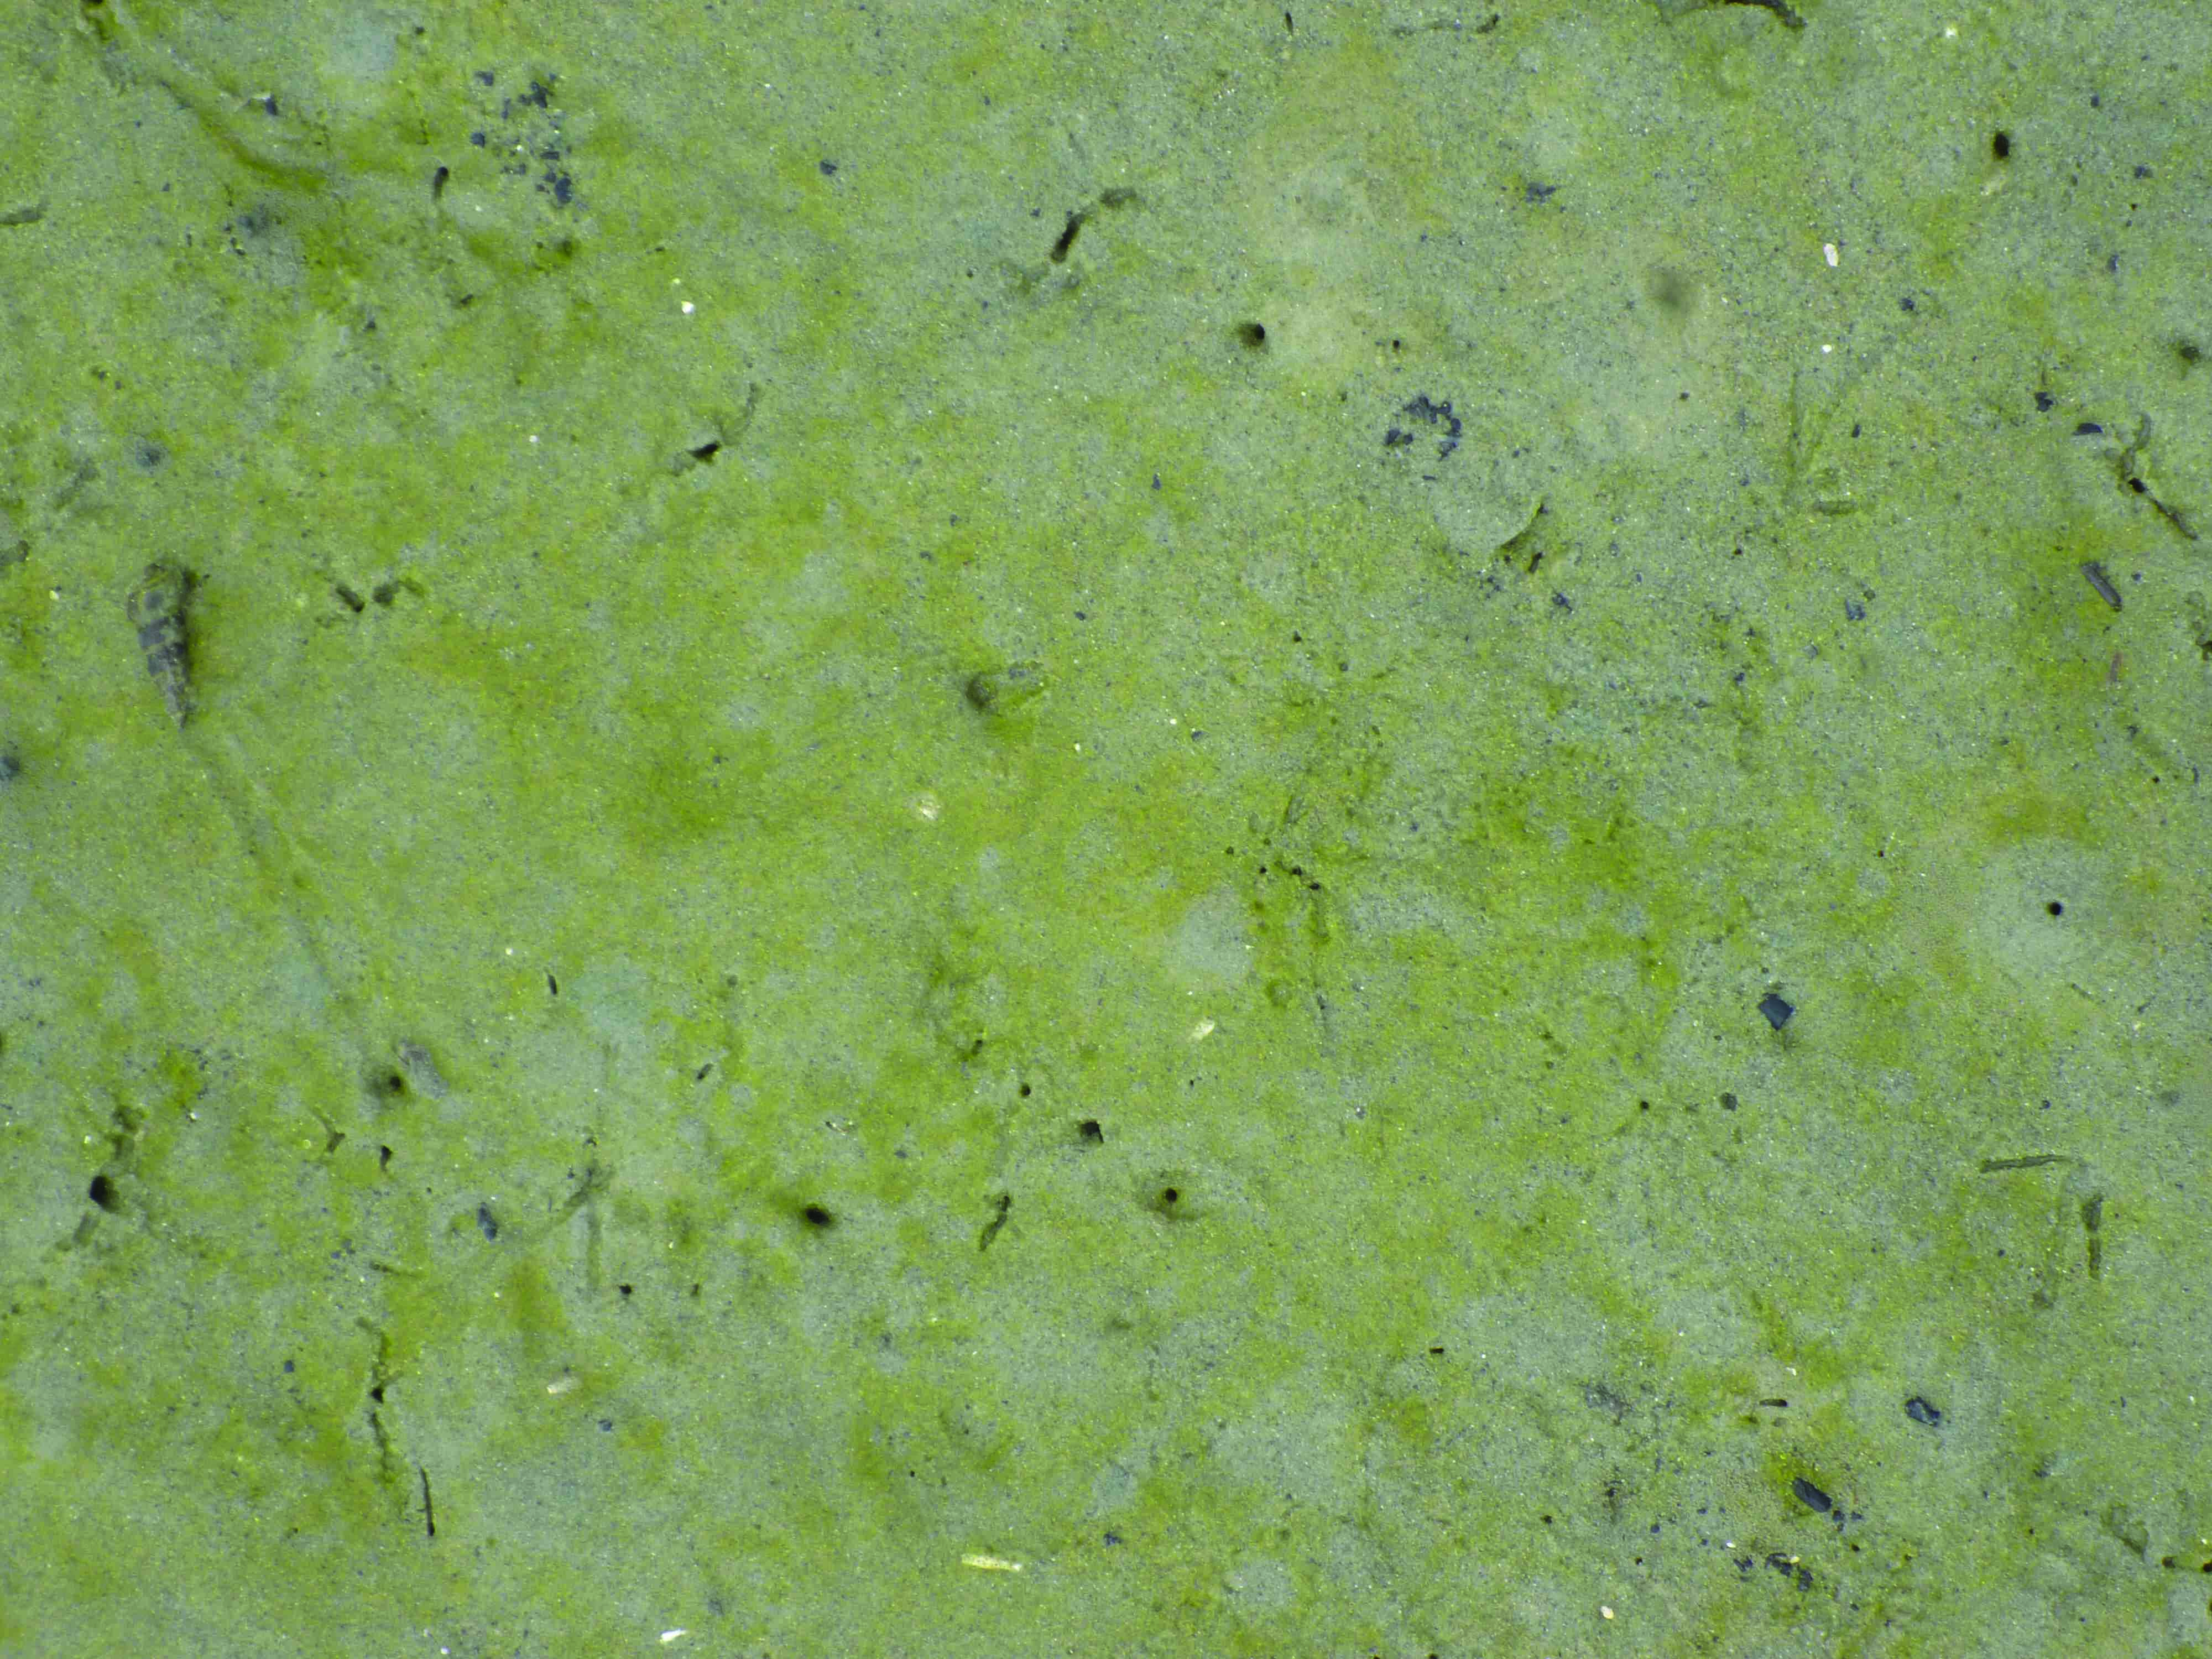 Benthic diatom (green scum)